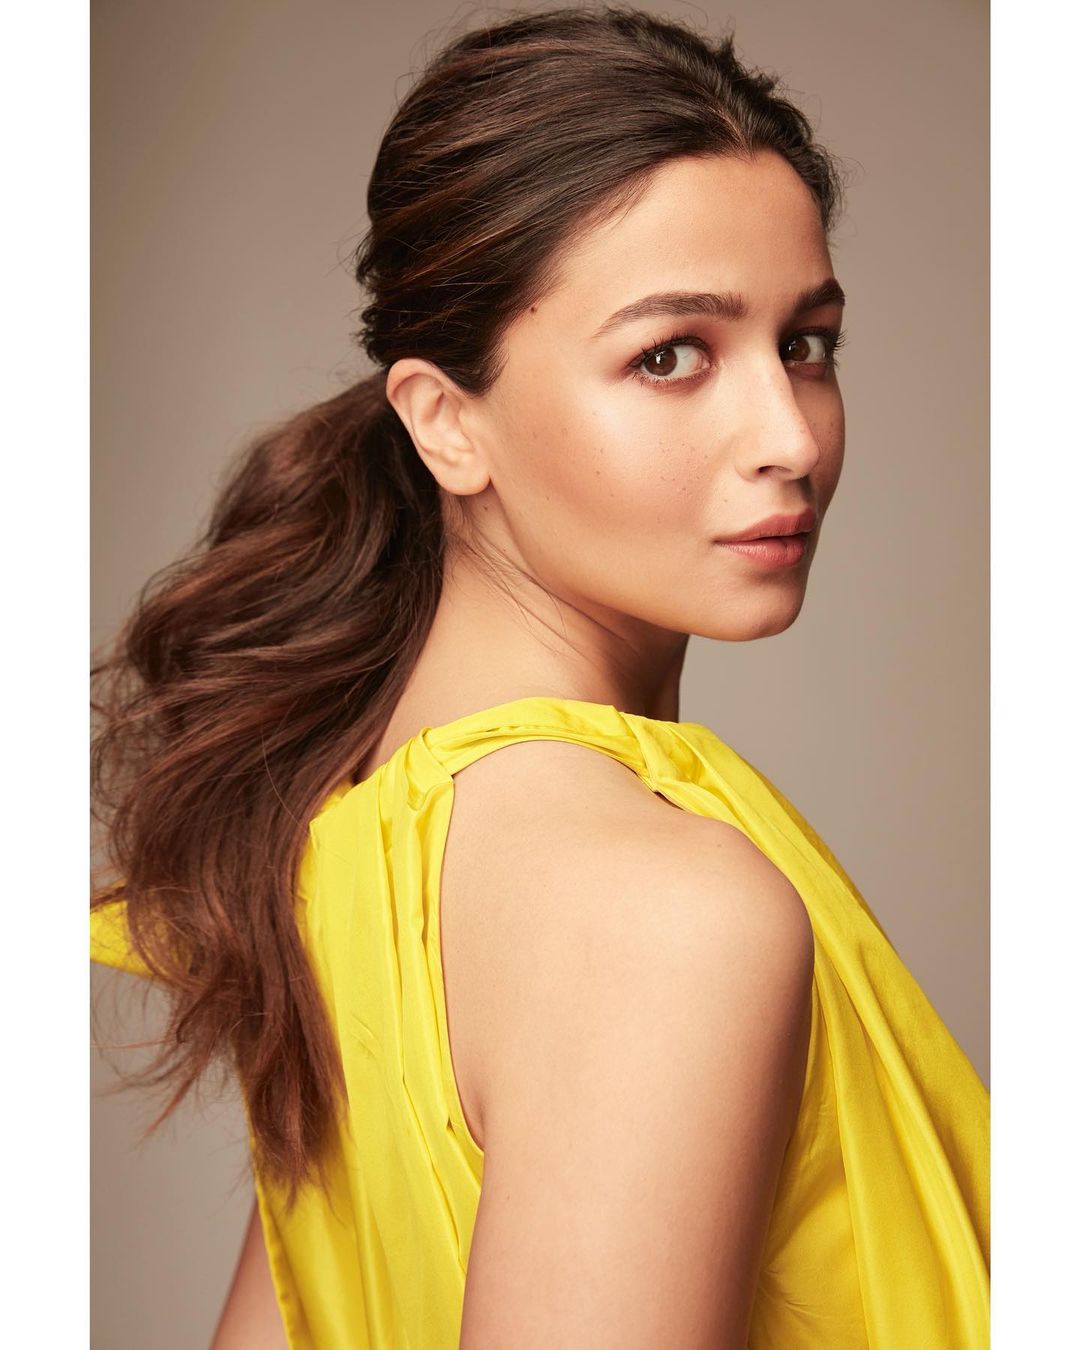 Alia Bhatt looks vibrant in the yellow balloon-style dress.